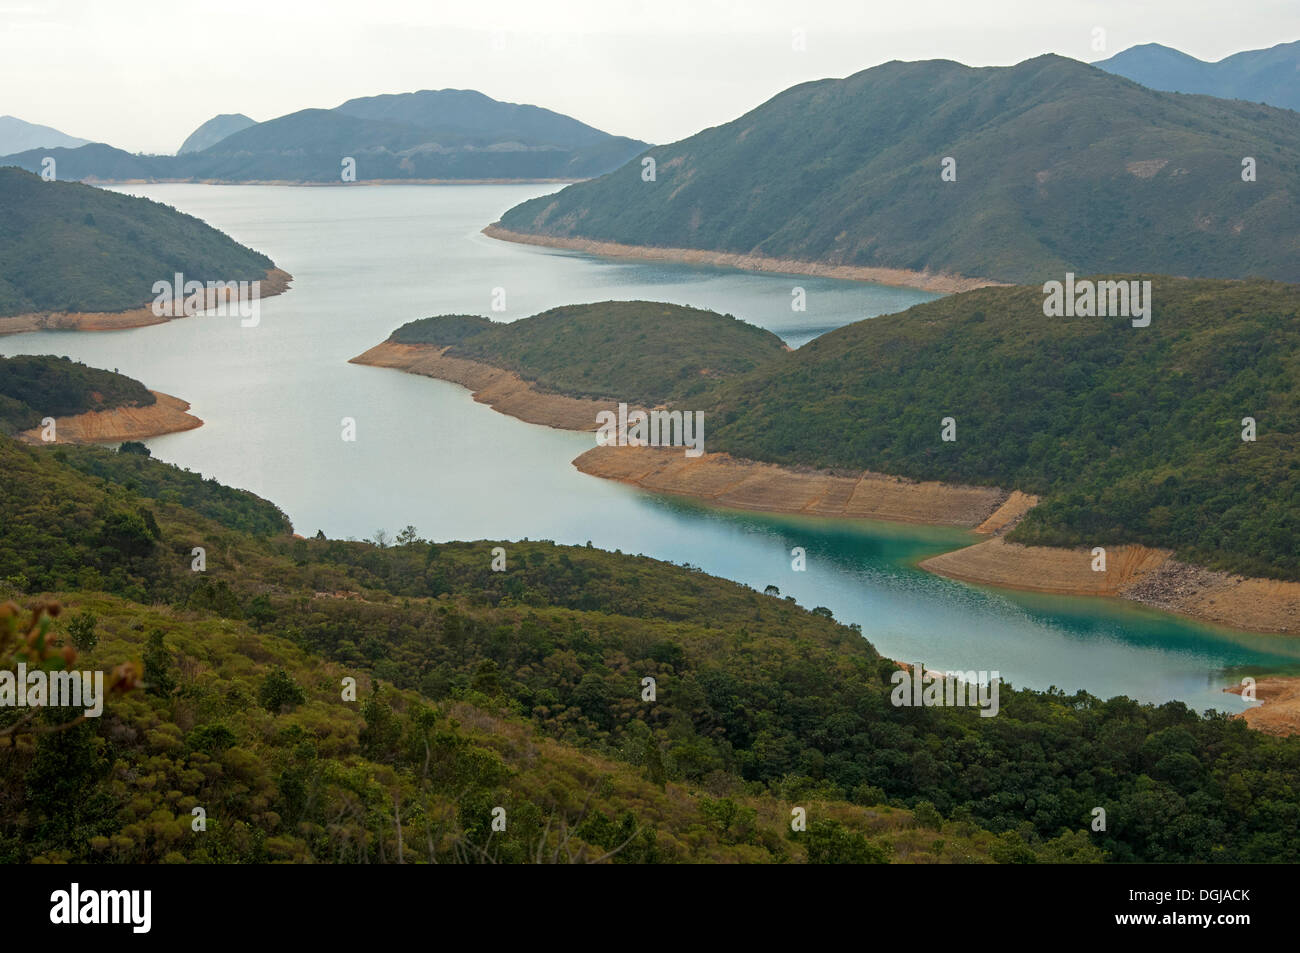 L'île haute, le réservoir de la péninsule de Sai Kung, nouveaux territoires, Hong Kong, Hong Kong, Chine, République populaire de Chine Banque D'Images